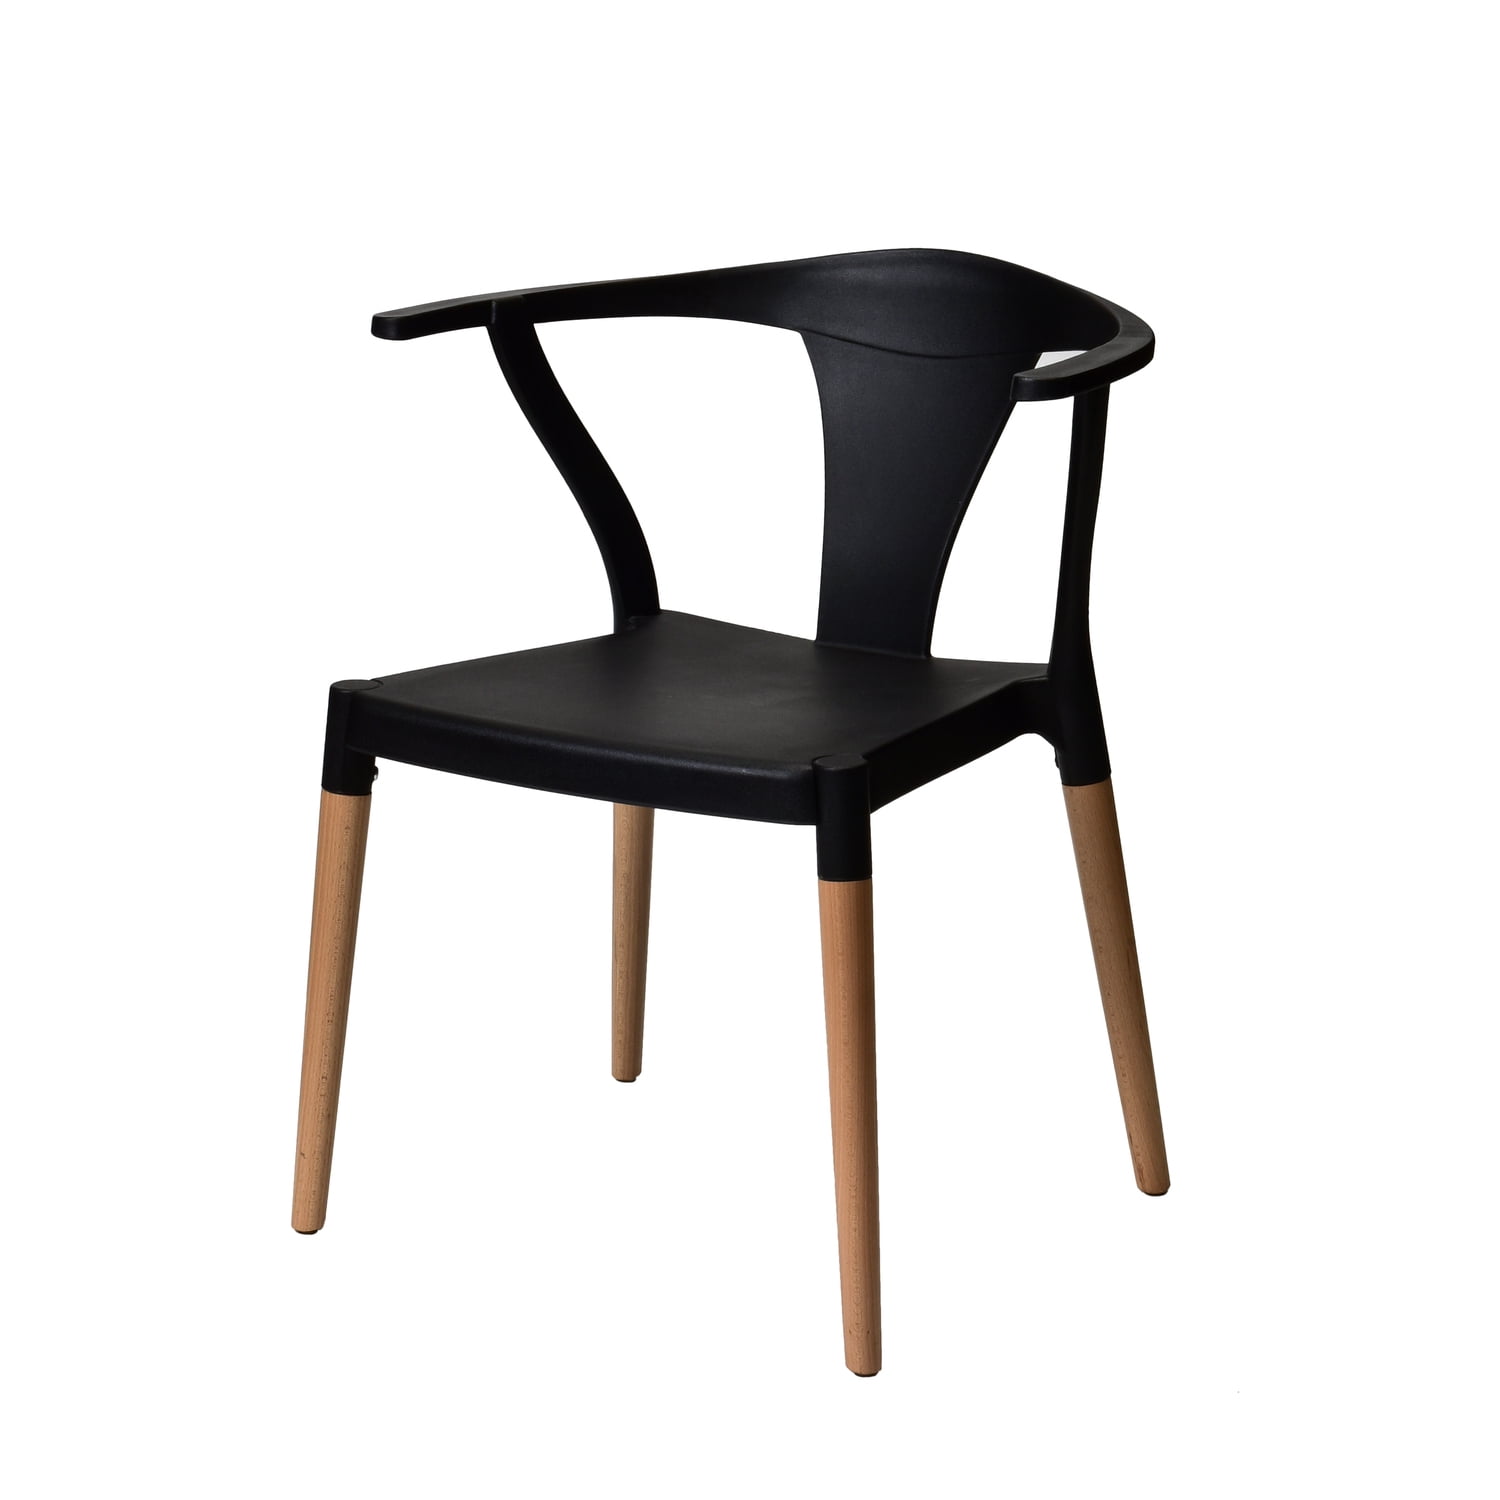 Cdpw1002-zsfp-bk Mid Century Modern Side Chair - Black - 30 In.